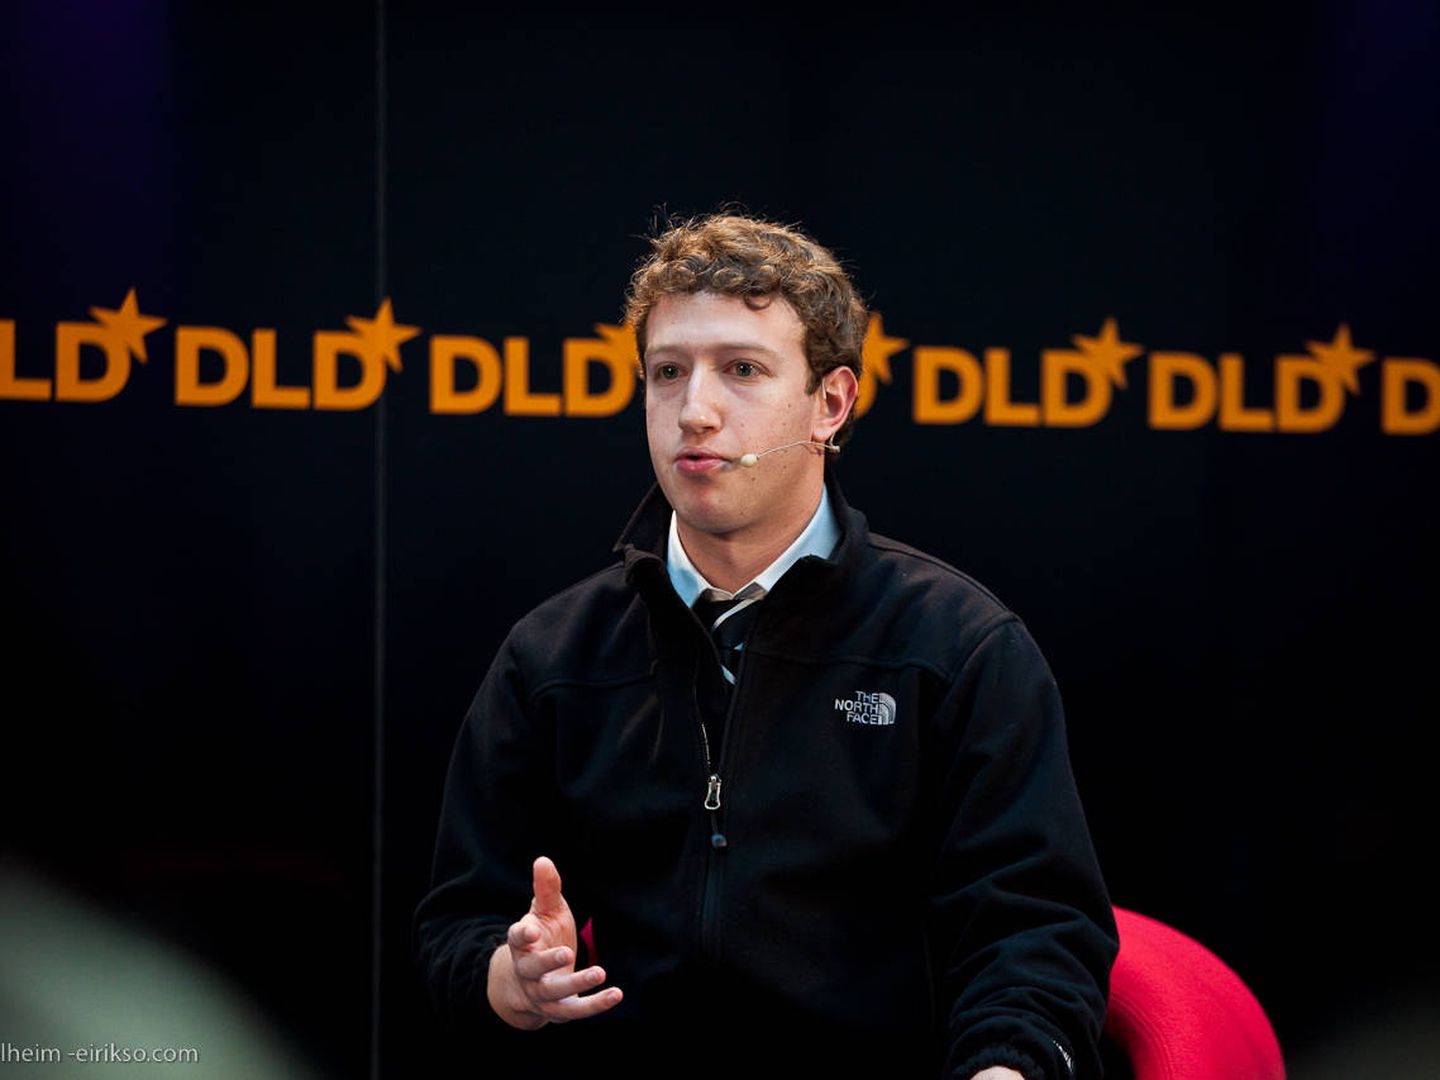 Galloway considera a Zuckerberg “la persona más poderosa del mundo sin un botón” (Eirik Solheim | Flickr)